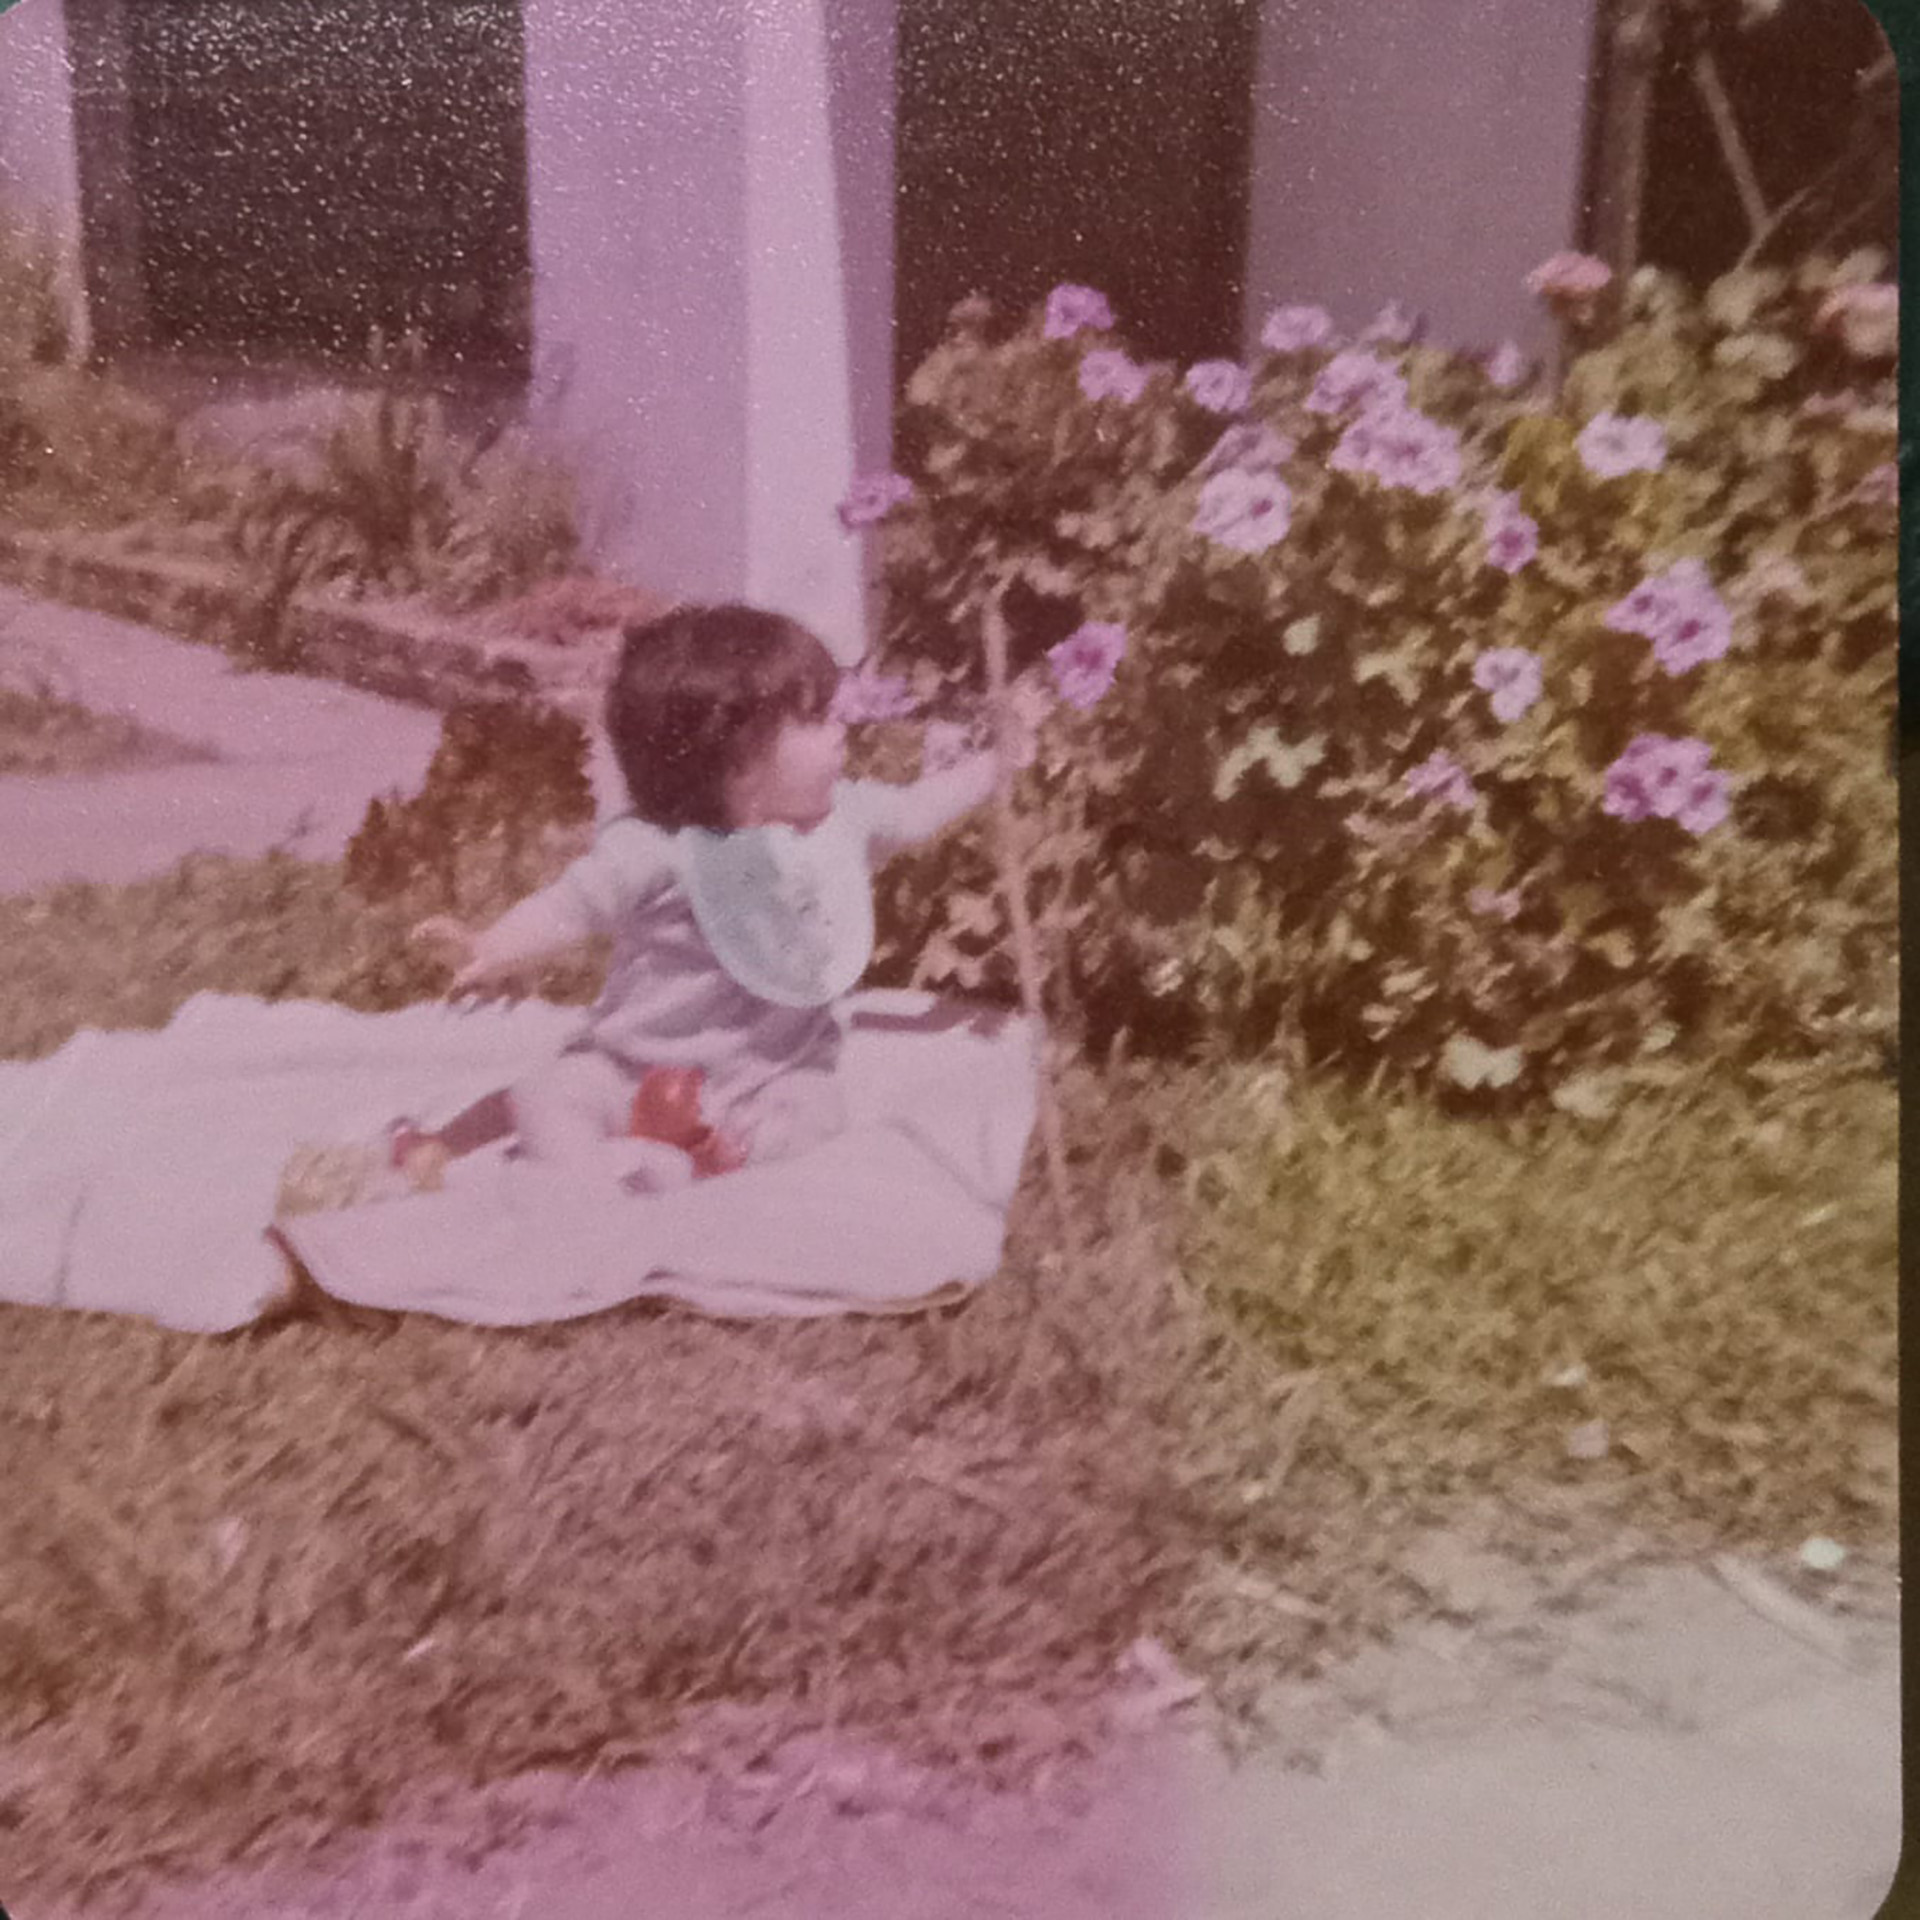 De pequeña en el jardín de su casa en San Isidro, la que añora y desea comprar algún día